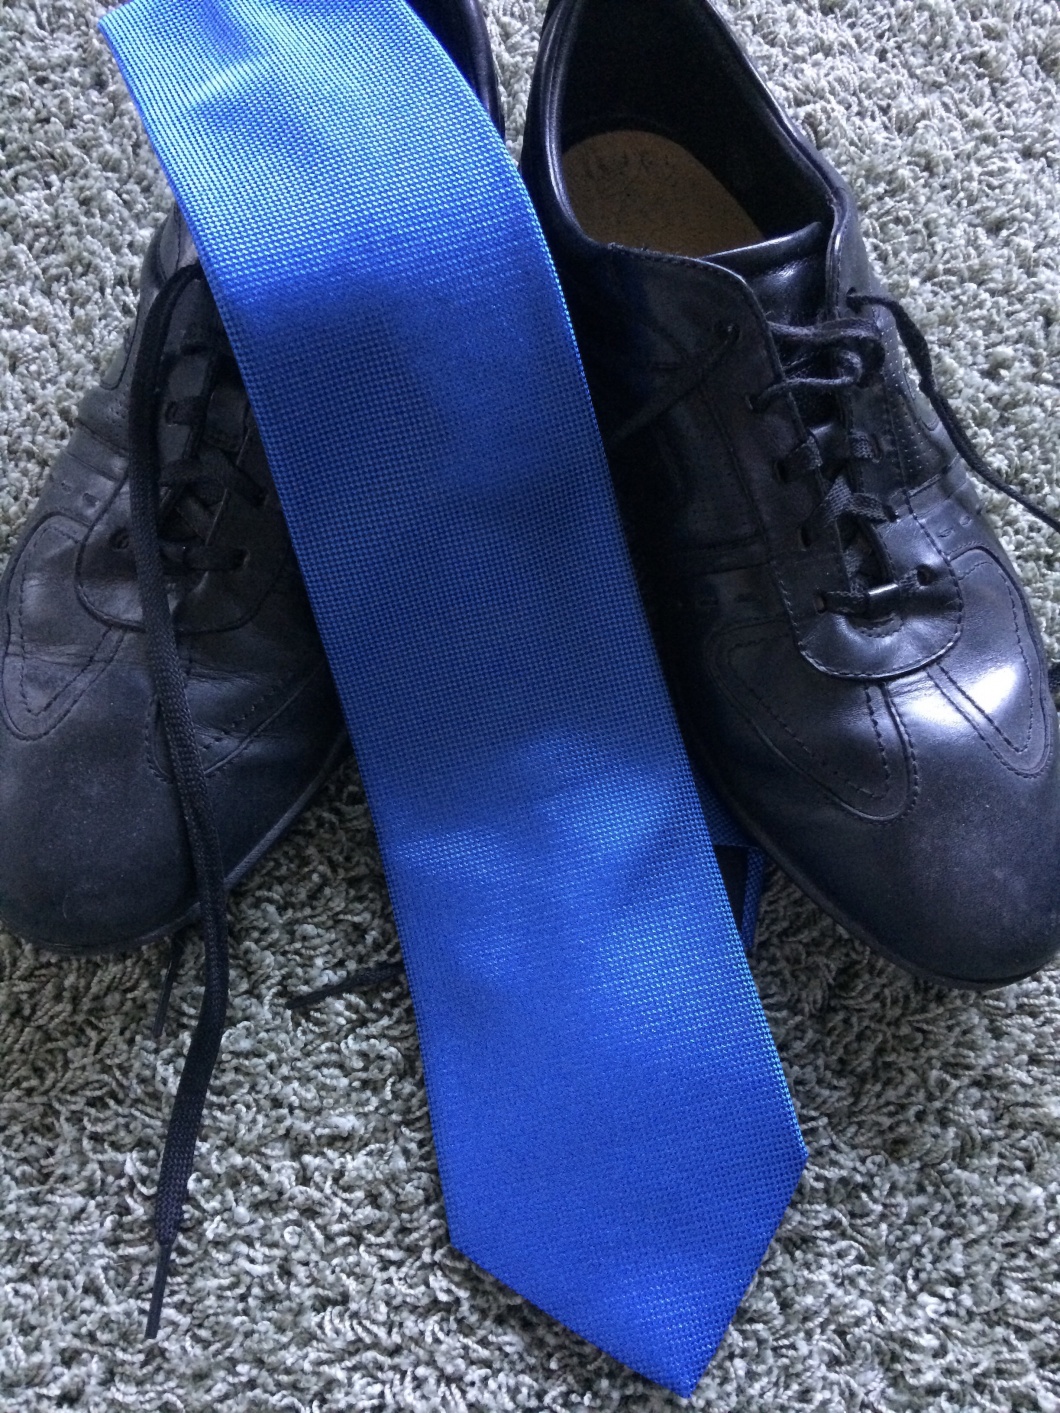 Ein Paar Sportschuhe und eine blaue Krawatte